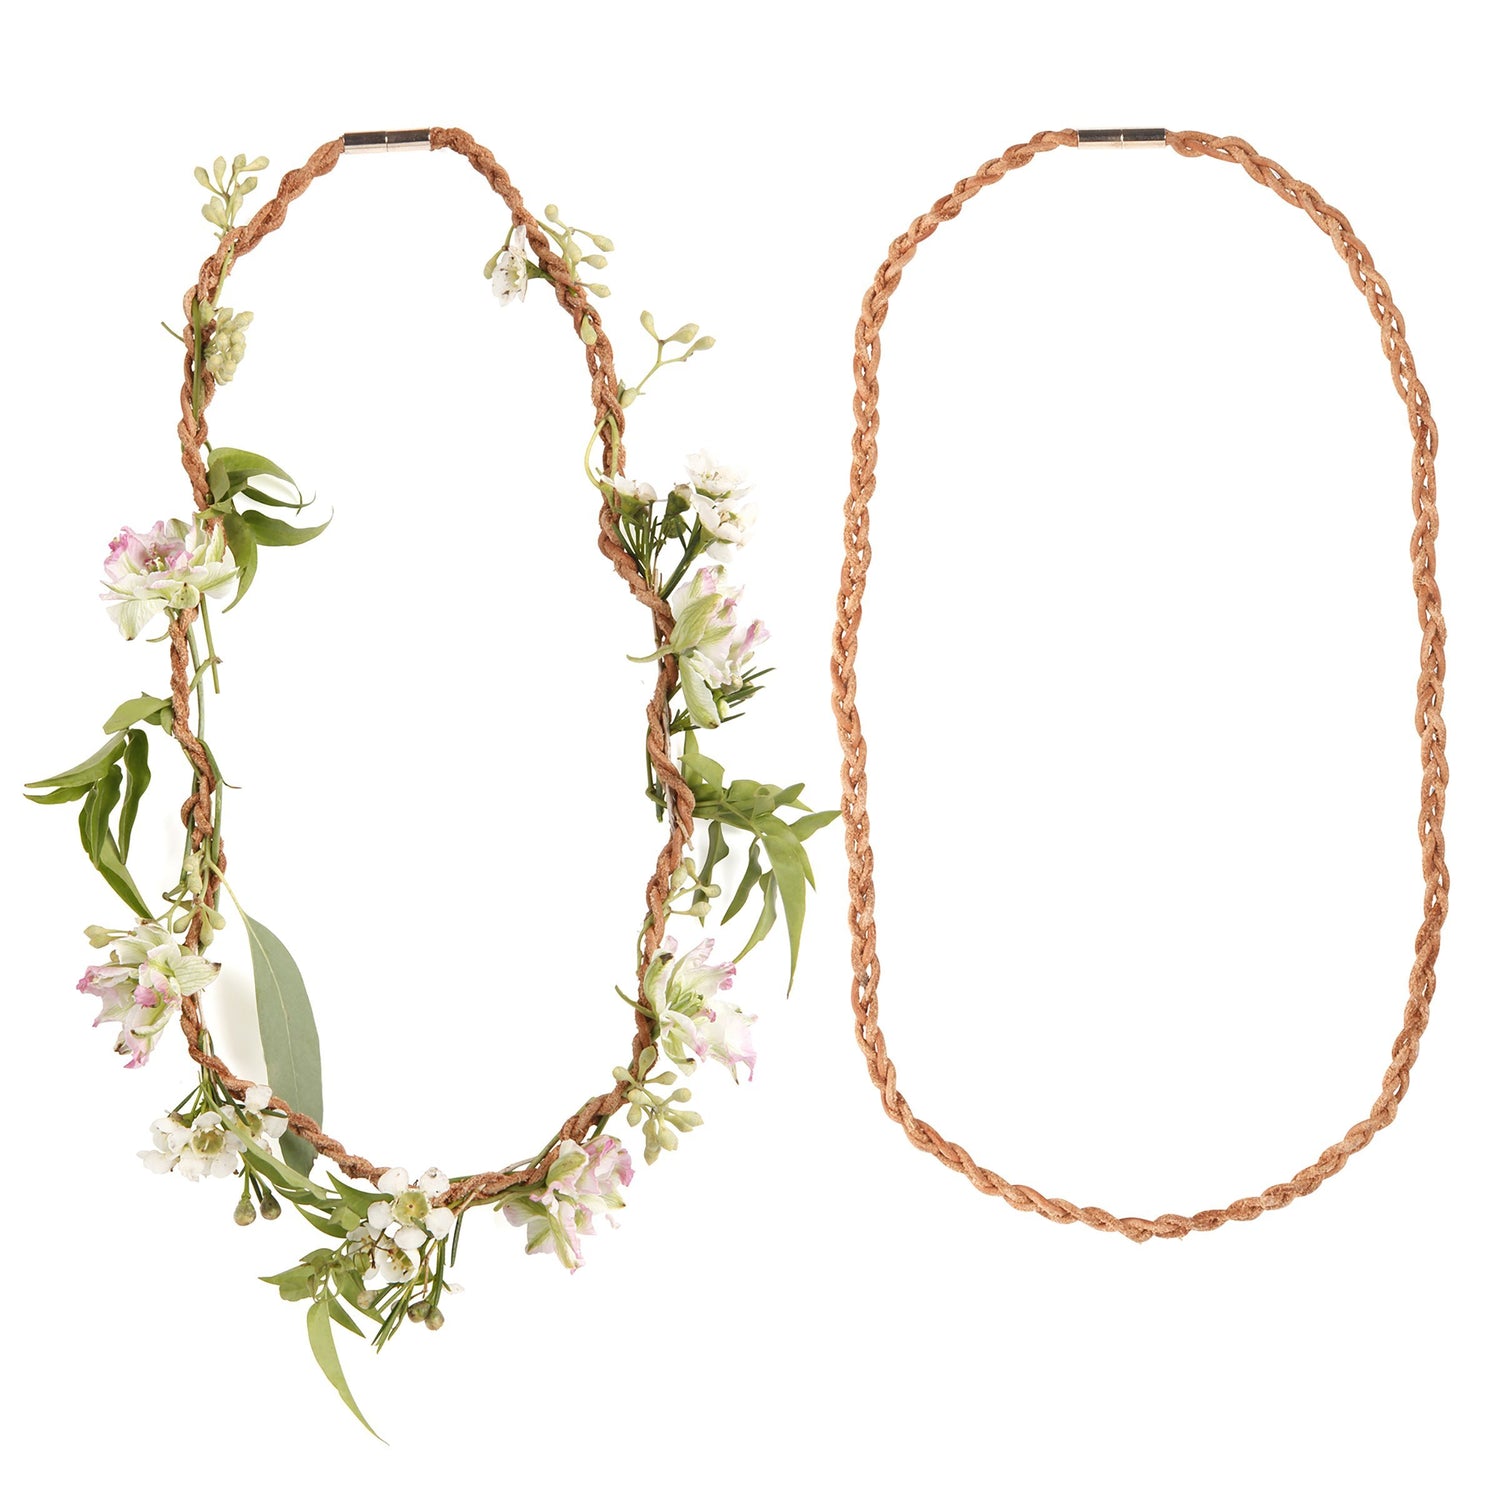 Huckleberry creare la propria collana di fiori freschi